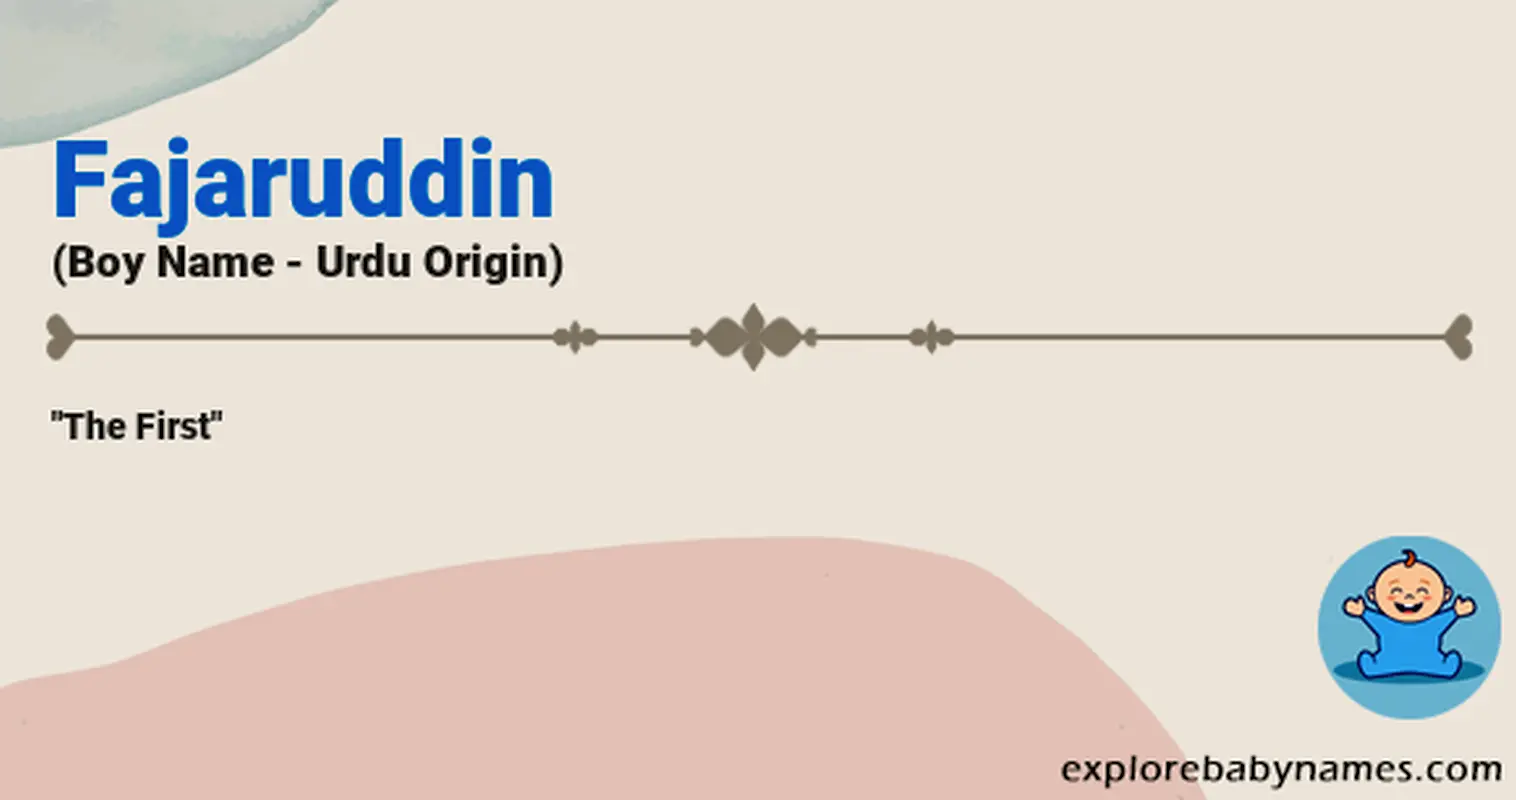 Meaning of Fajaruddin